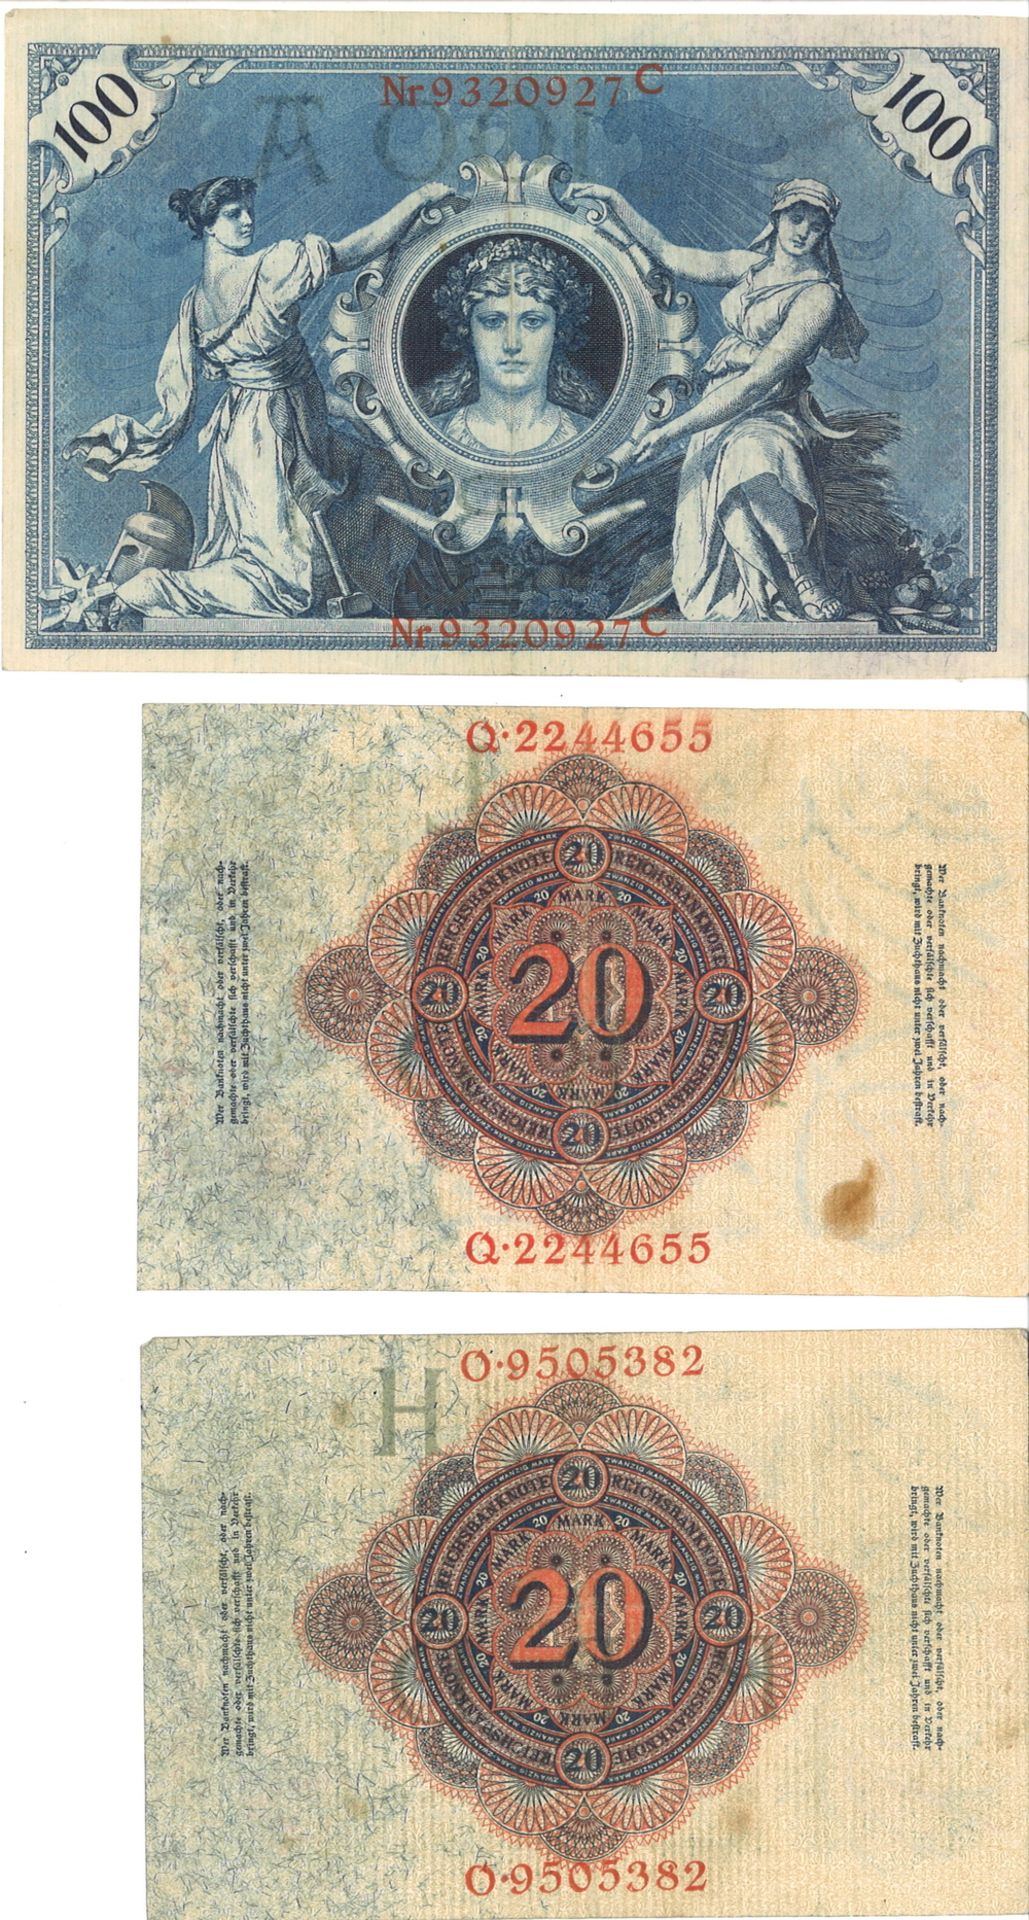 Lot von 3 Reichsbanknoten, dabei 2x "Zwanzig Mark" 1914, 1x Einhundert Mark" 1908. Erhaltung: s - Bild 2 aus 2